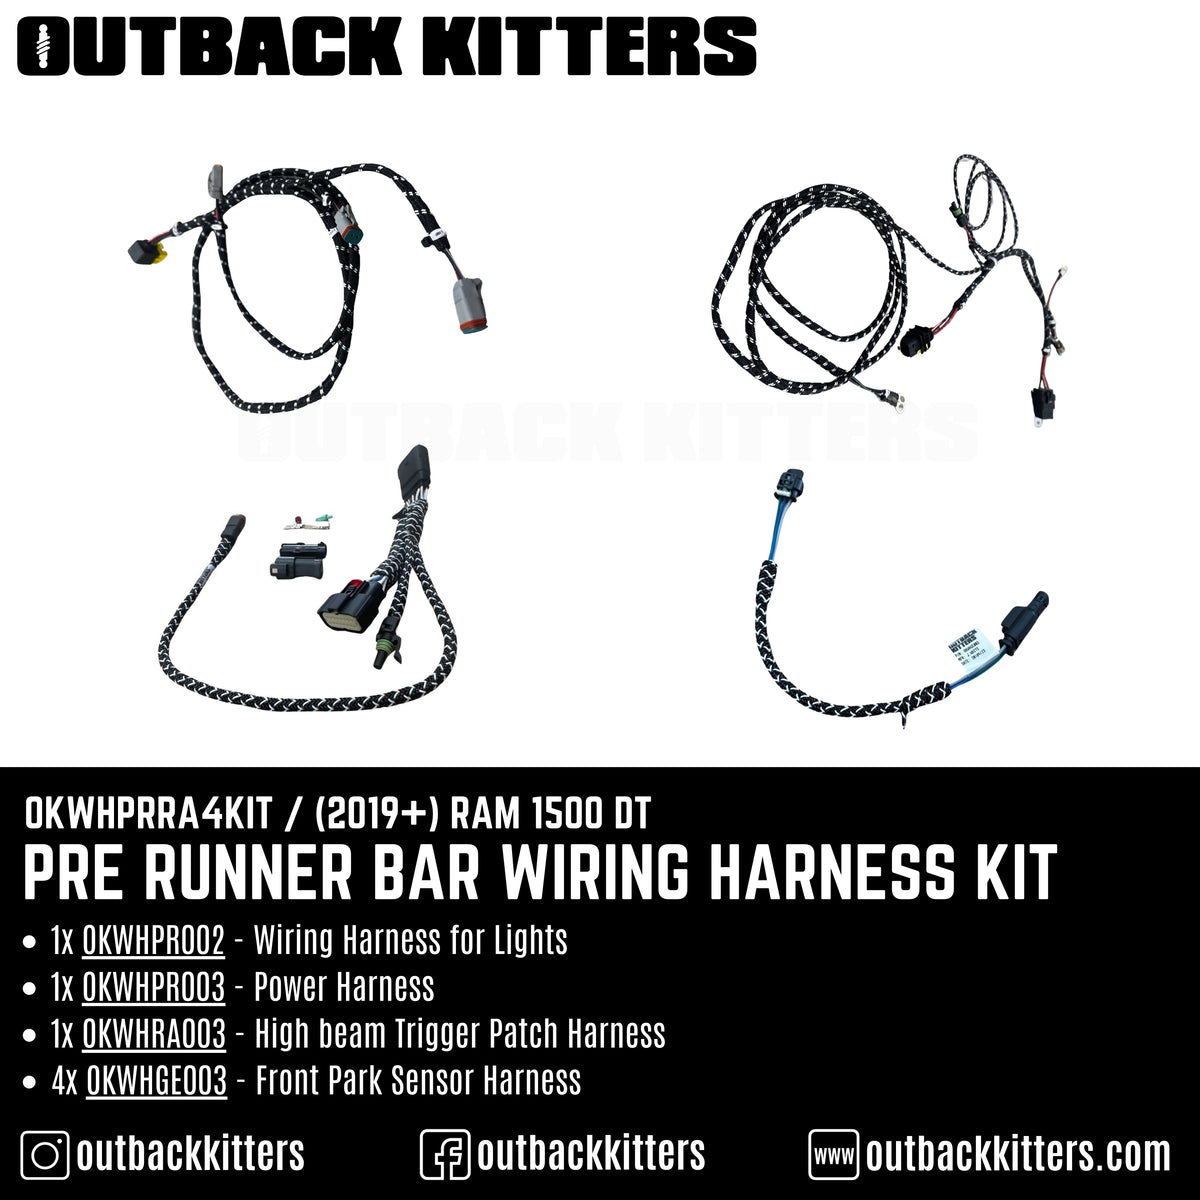 Pre Runner Bar Wiring Harness Kit for 2019+ RAM 1500 DT